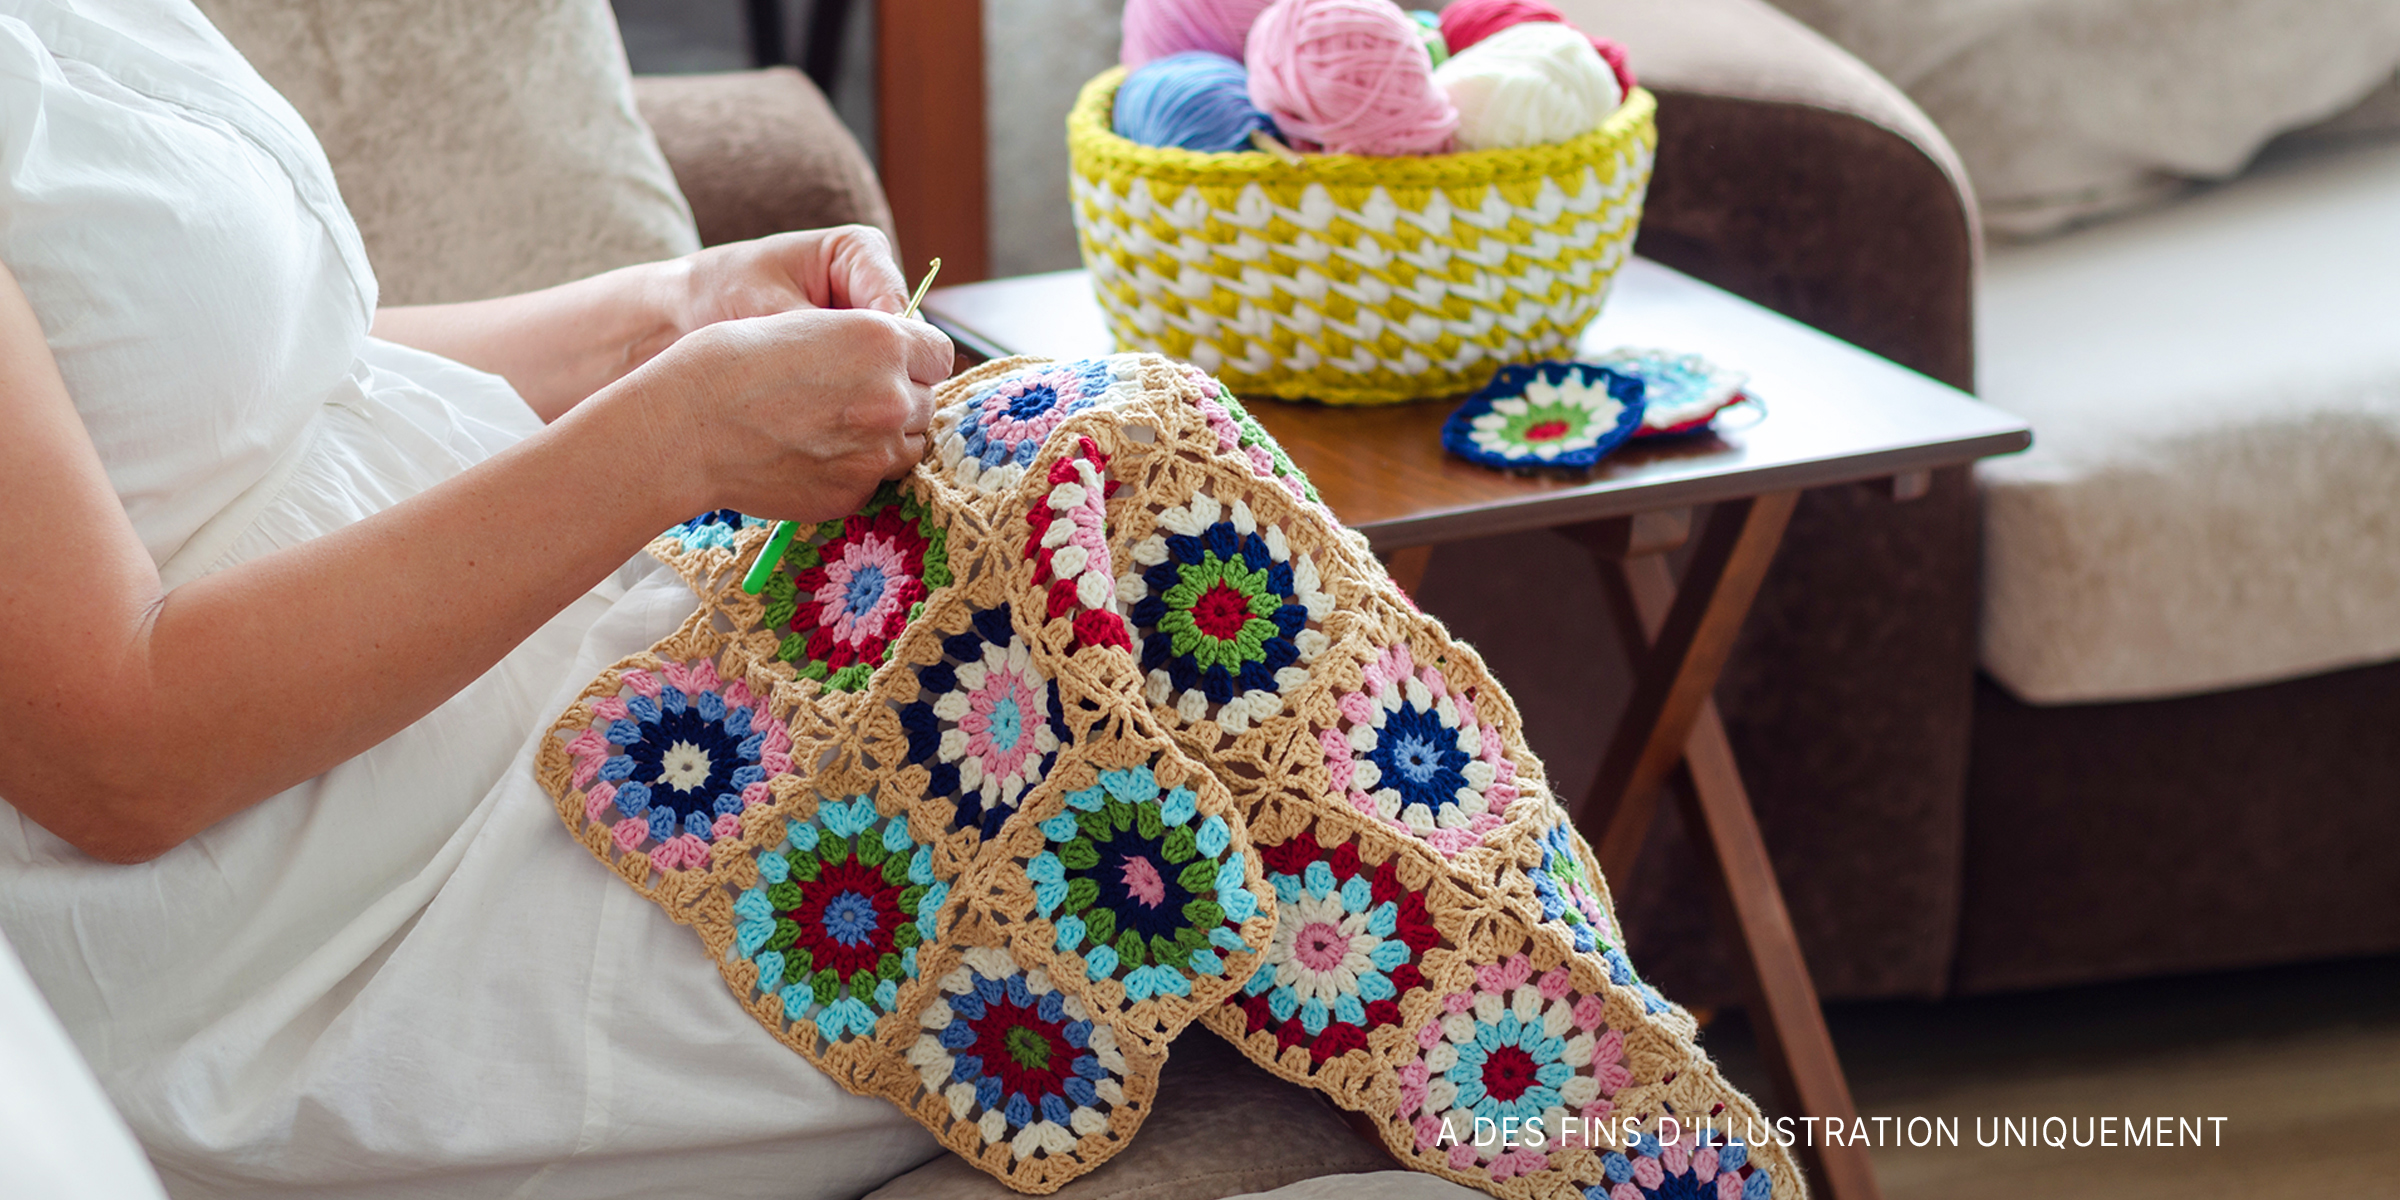 Femme crochetant une couverture pour bébé | Source : Shutterstock